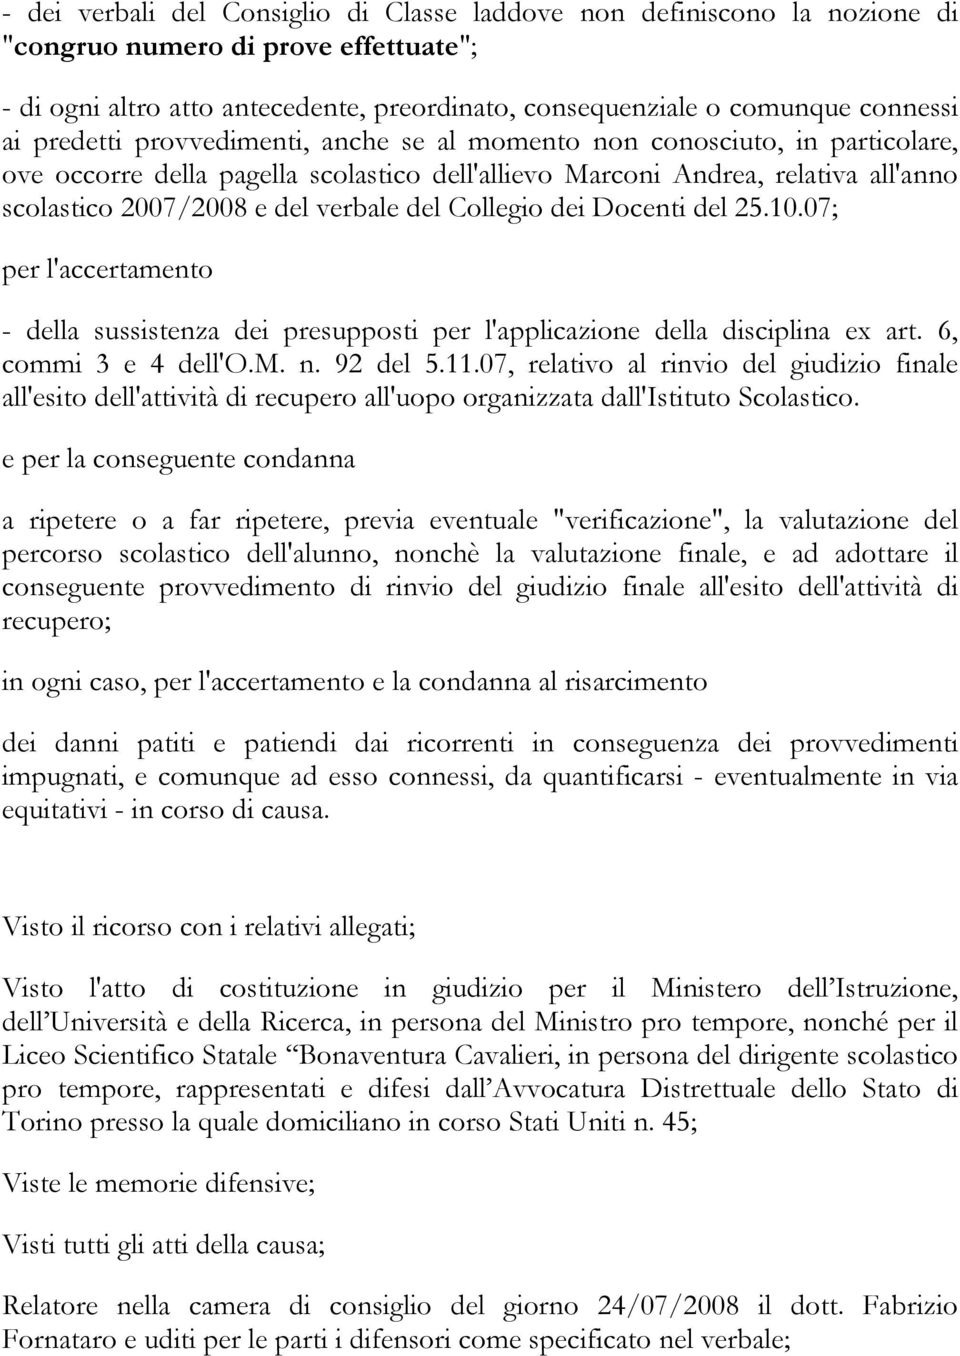 Collegio dei Docenti del 25.10.07; per l'accertamento - della sussistenza dei presupposti per l'applicazione della disciplina ex art. 6, commi 3 e 4 dell'o.m. n. 92 del 5.11.